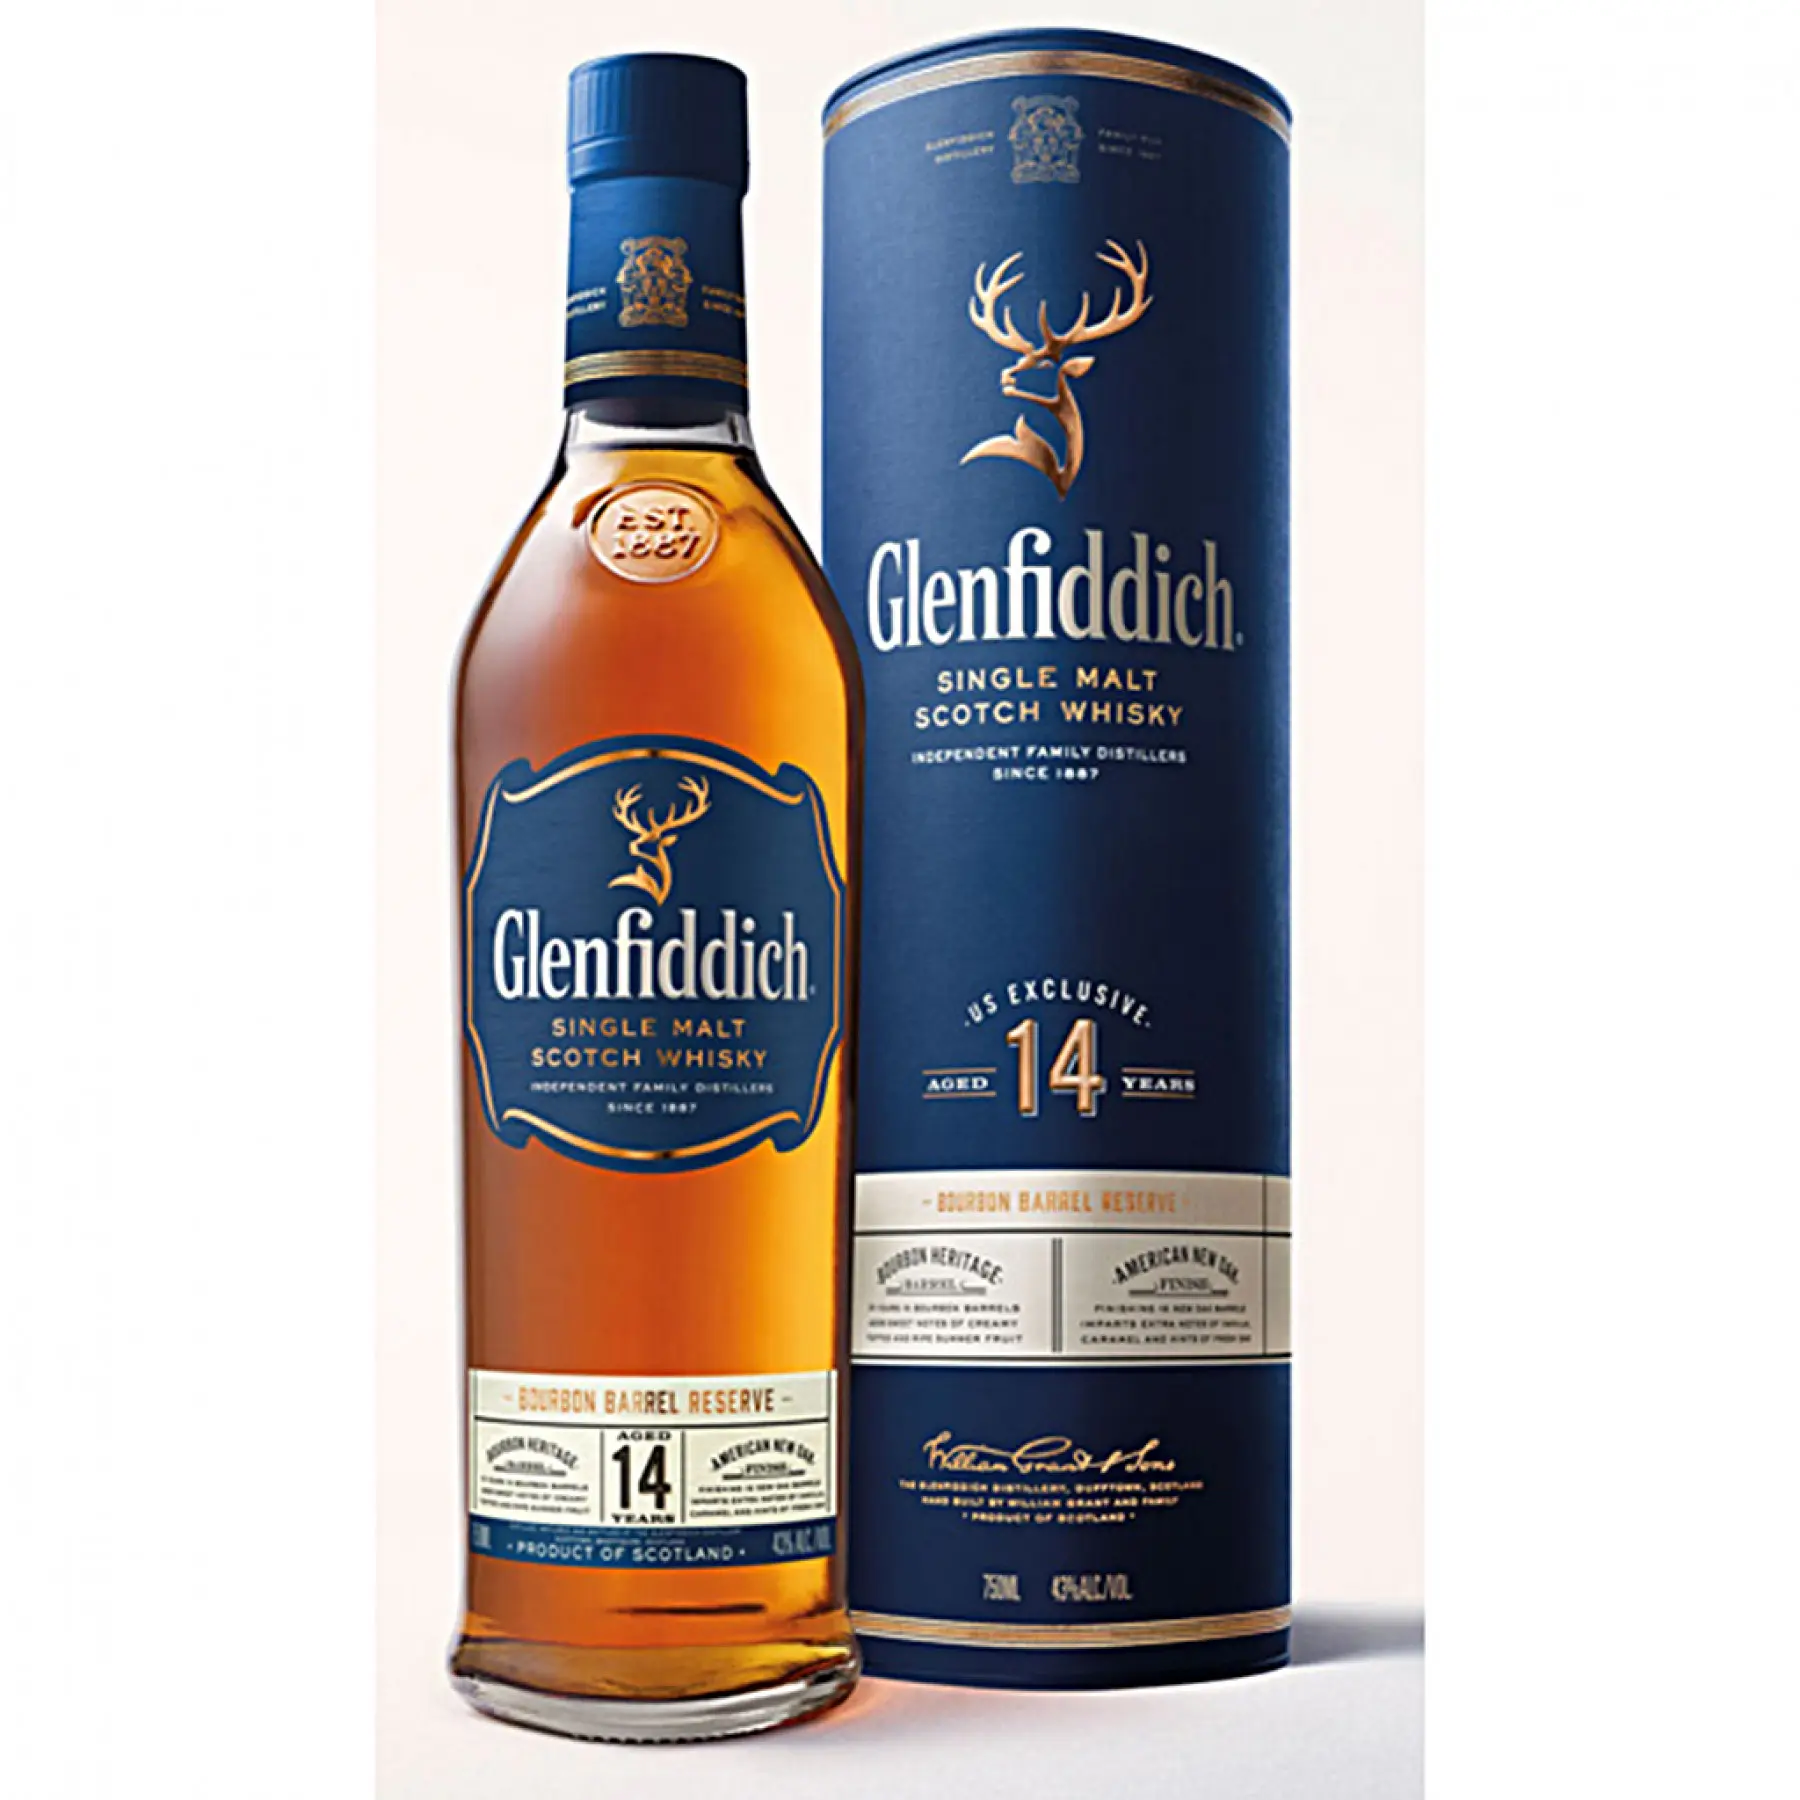 Glenfiddich Scotch Whisky Alle Jahre Verfügbar